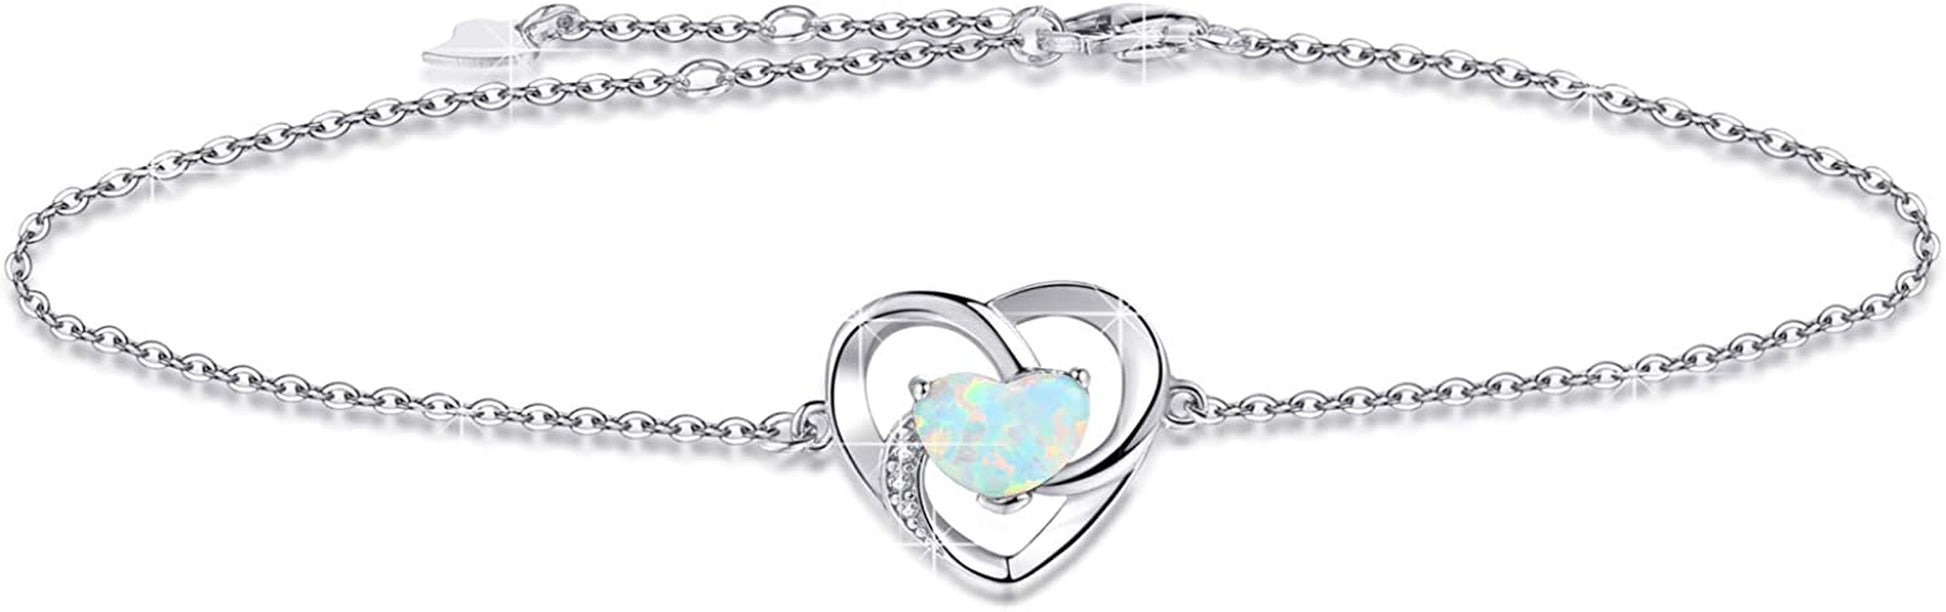 Buy YZSFMZGE Opal Heart Anklet - 925 Sterling Silver Adjustable Bracelet | Elegance Jewelry